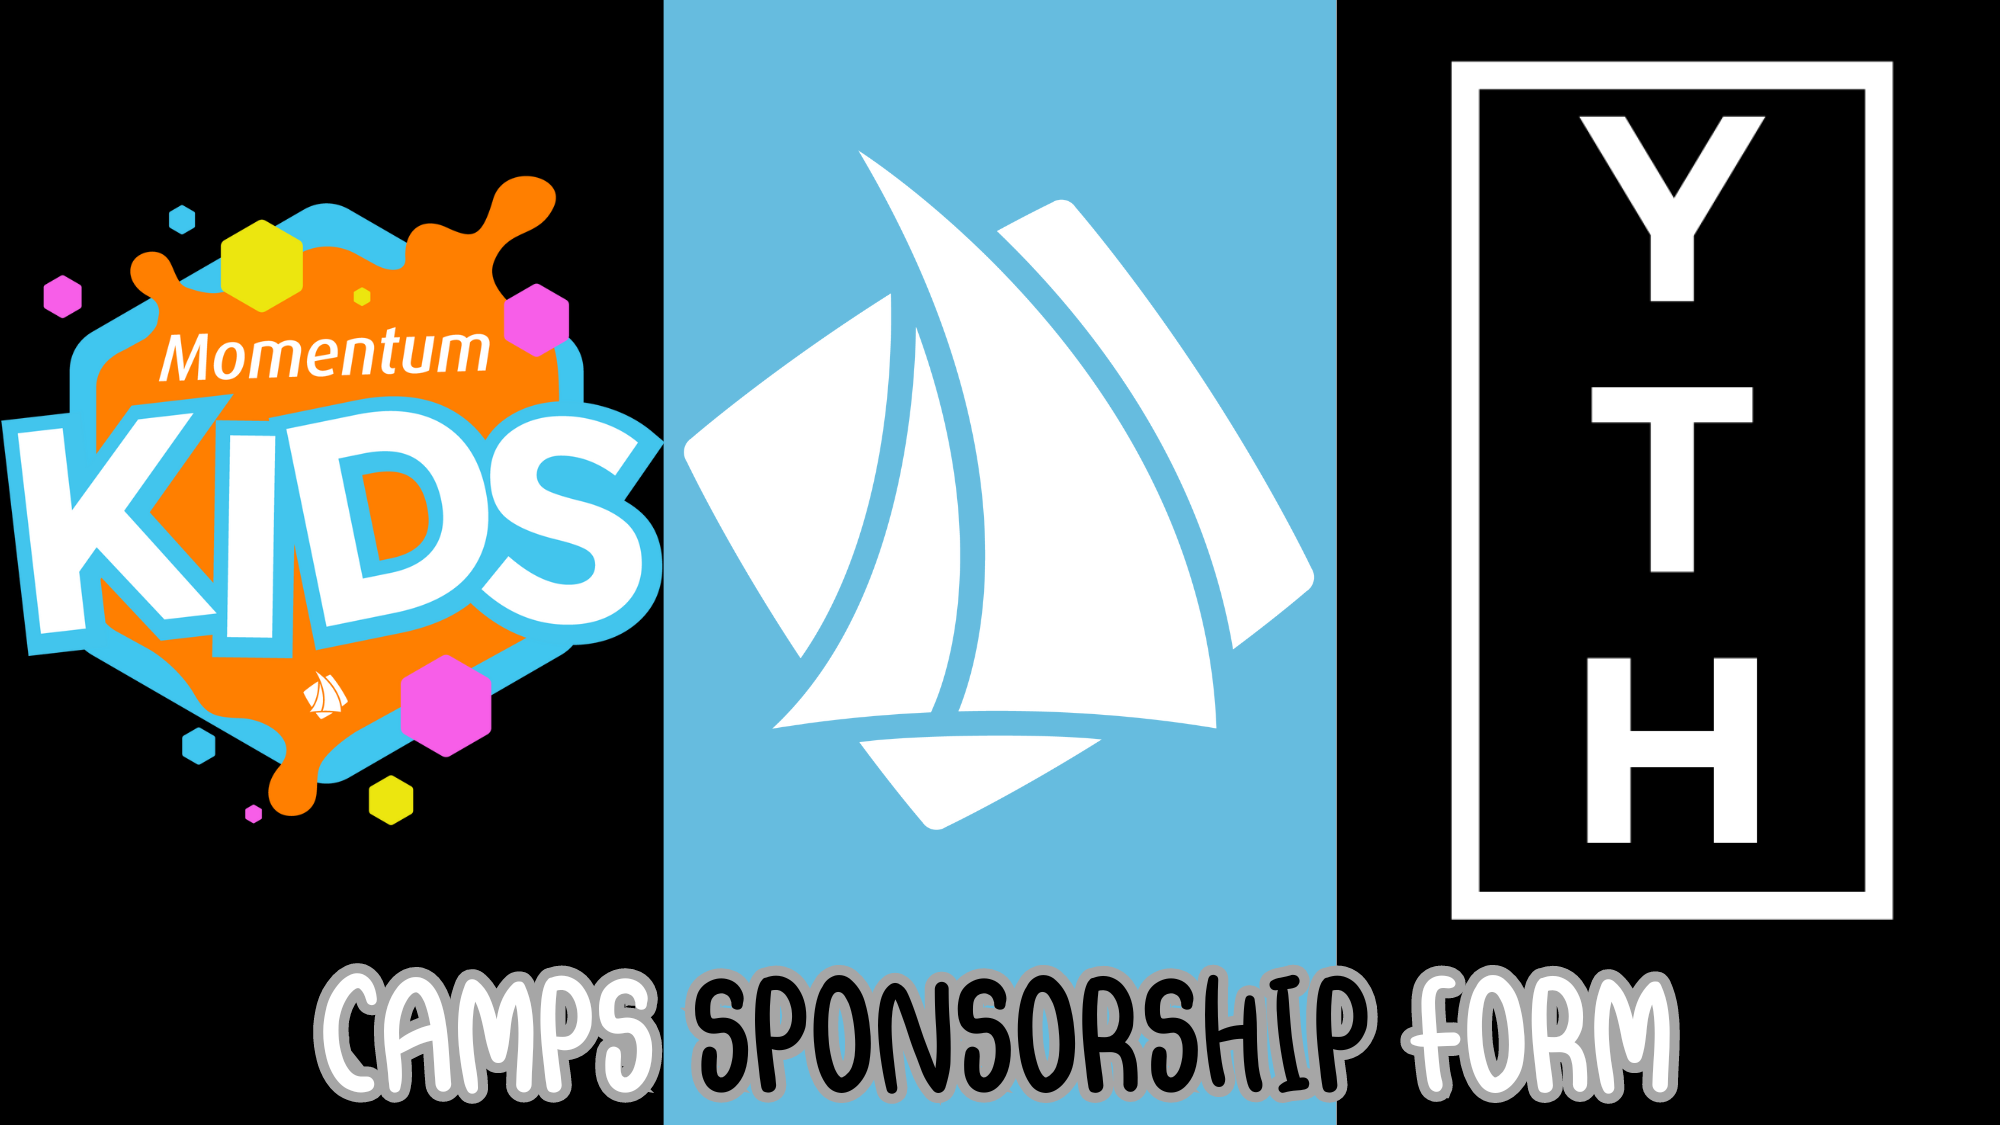 Camps Sponsorship Form